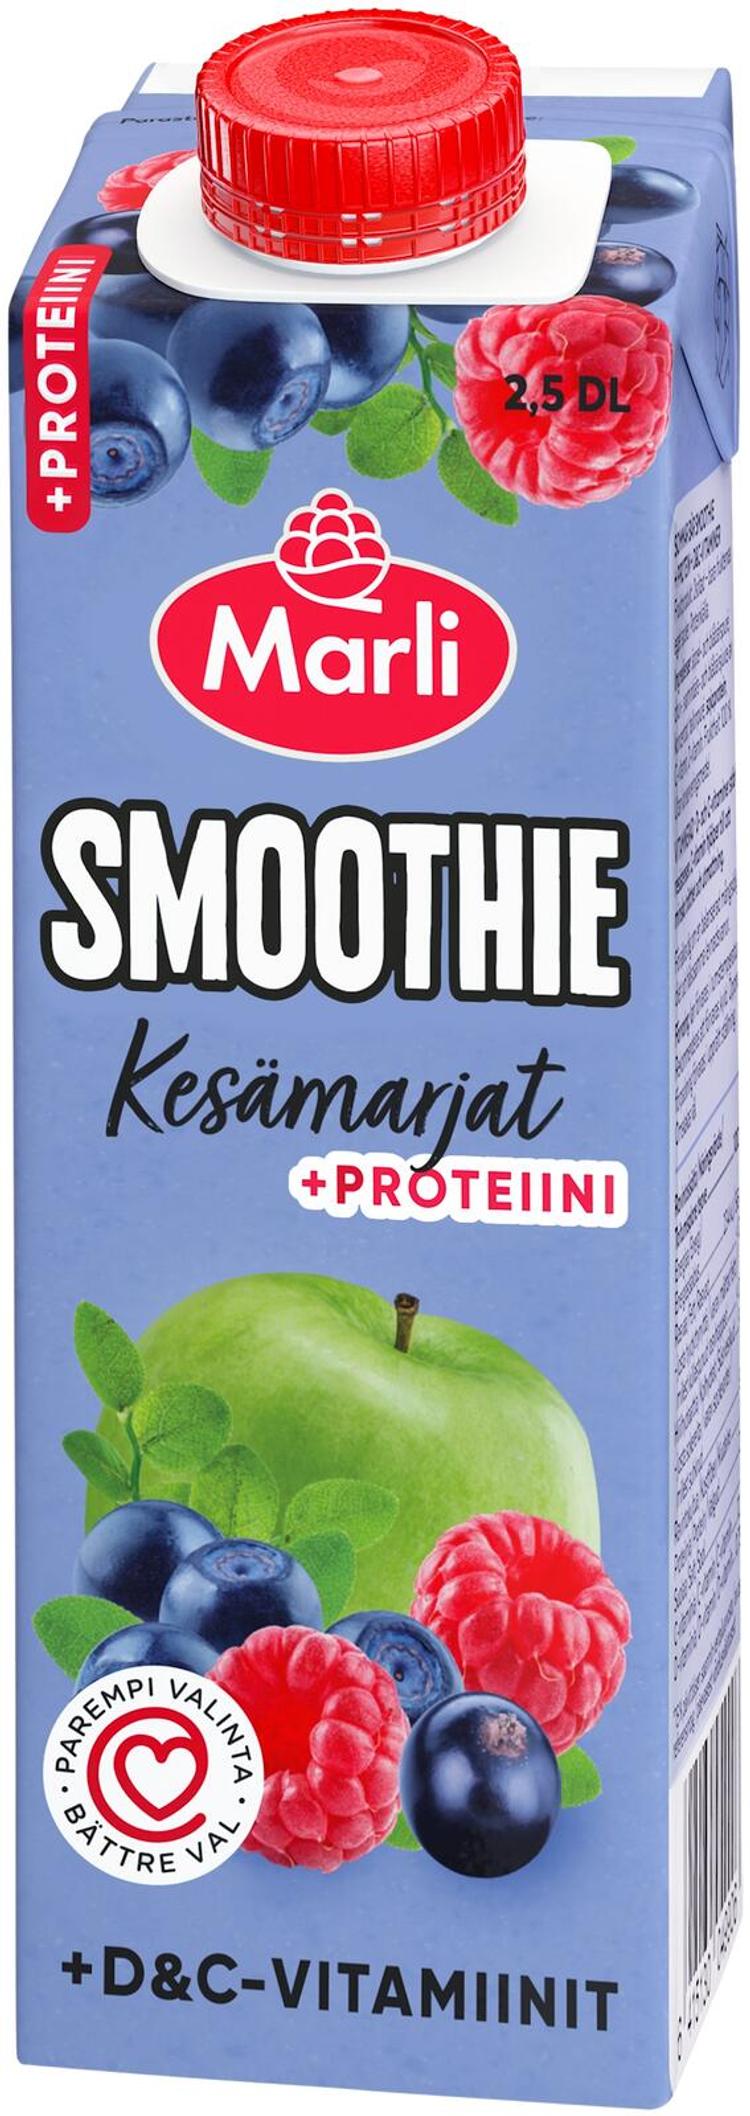 Marli Kesämarjat smoothie + D&C -vitamiinit ja proteiini 0,25L